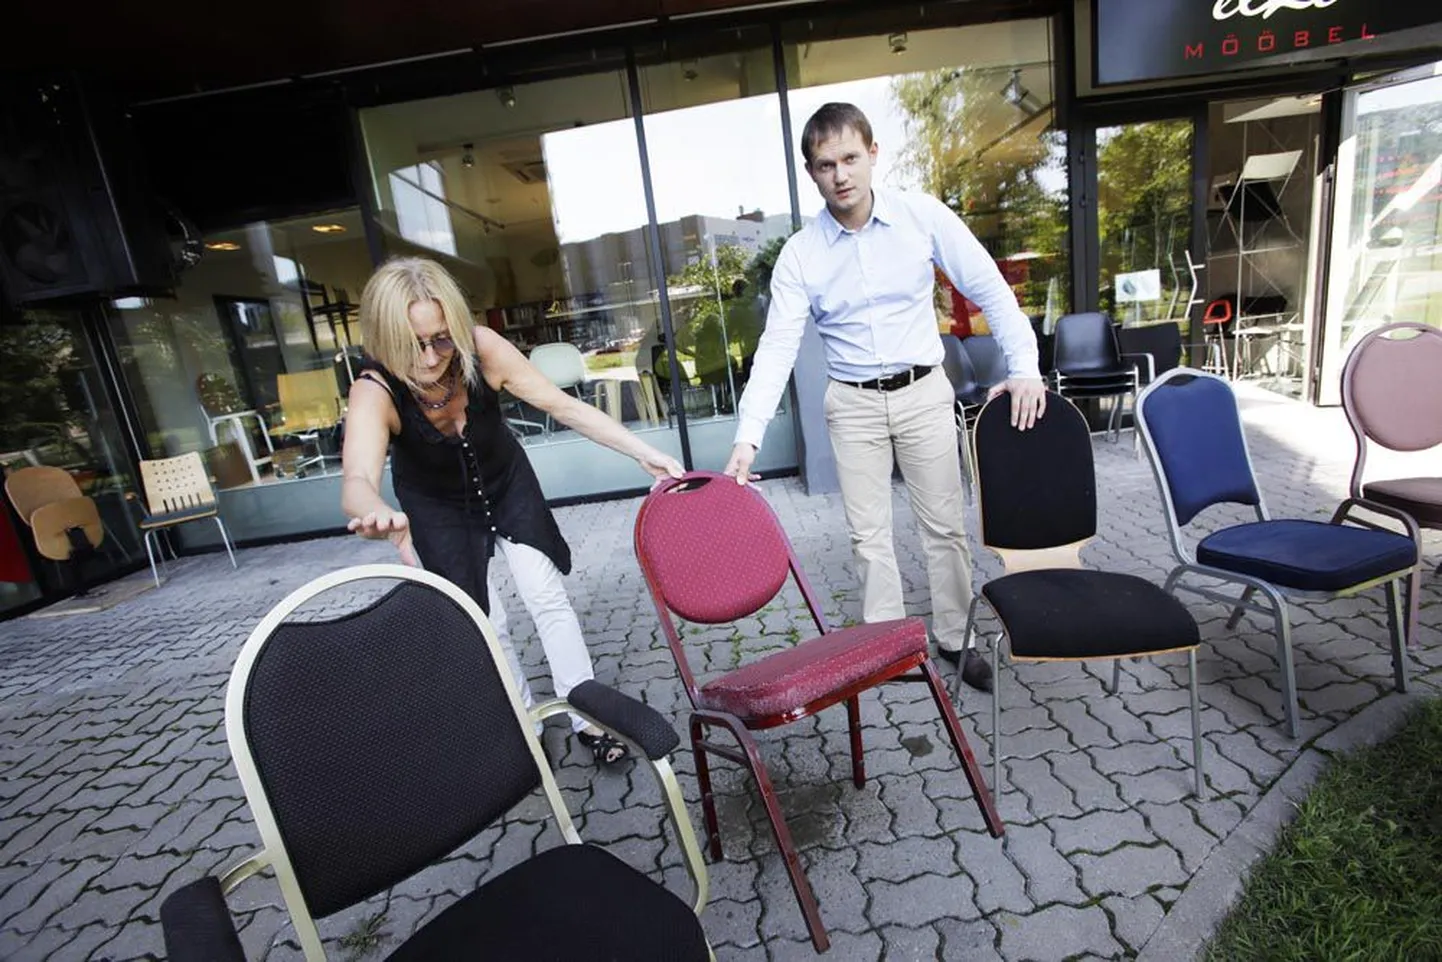 Elke mööblifirma juhatuse liige Anu Hiiop ja tegevjuht Siim Siigur sätivad poe ette «vabale turule» toole, mis ei ole müügiks enam kõlblikud.